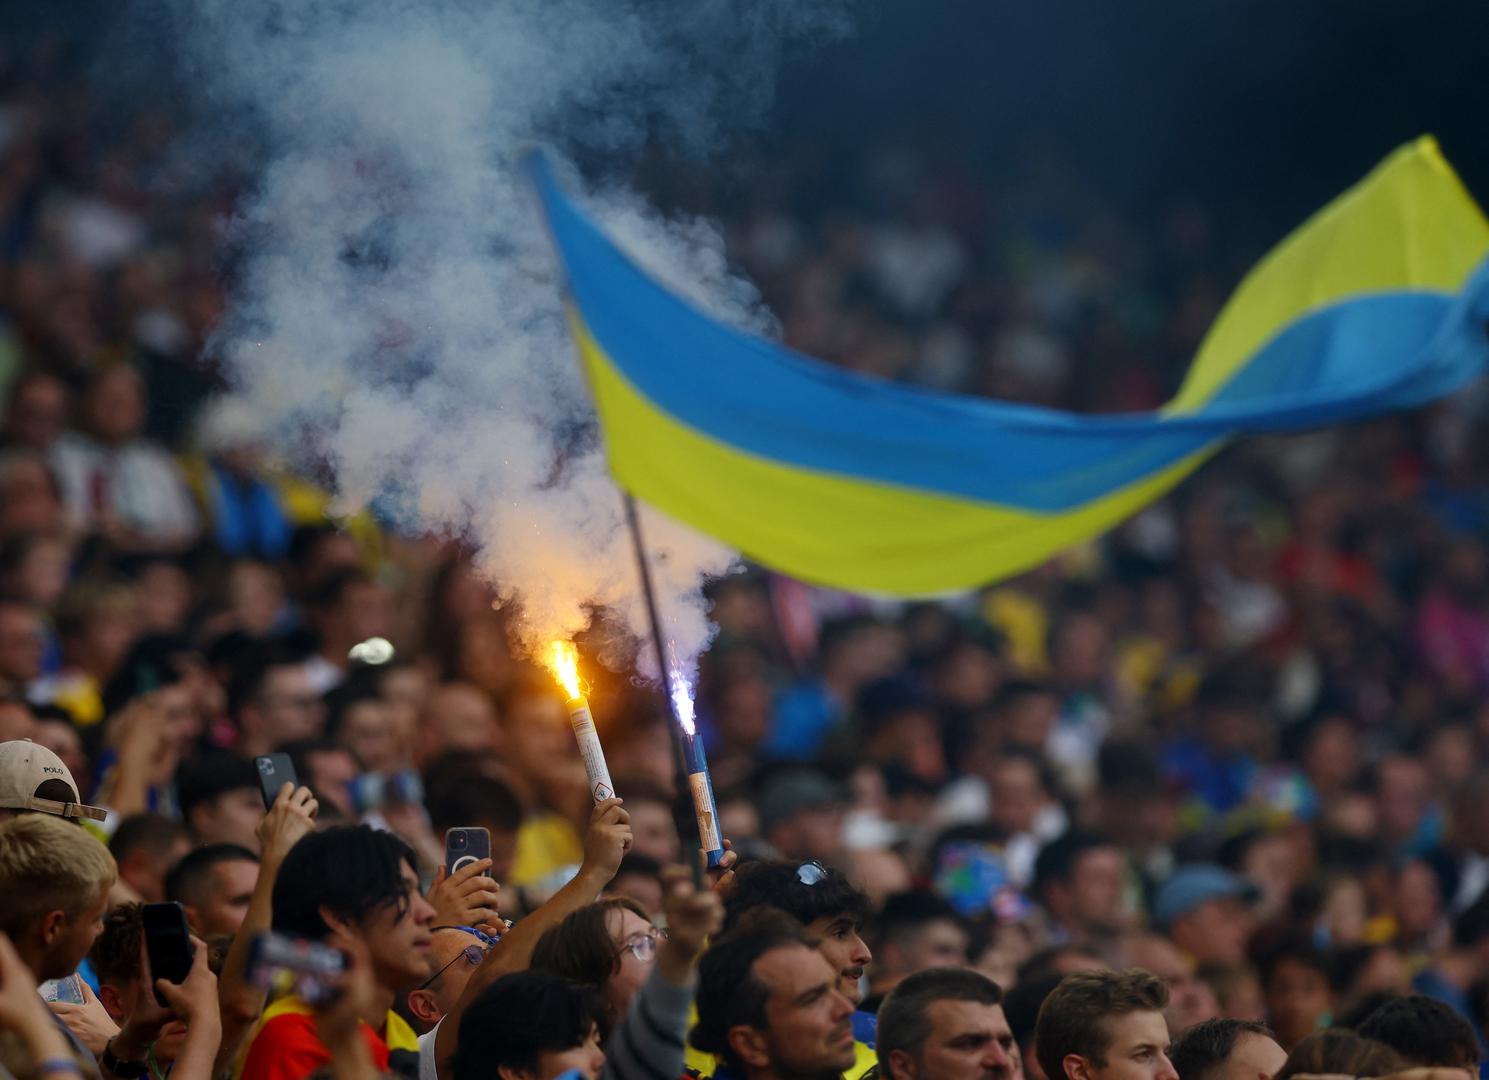 Negdje na sredini ljestvice, točnije na 14. mjestu, našla se Ukrajina s 53.000 navijača.